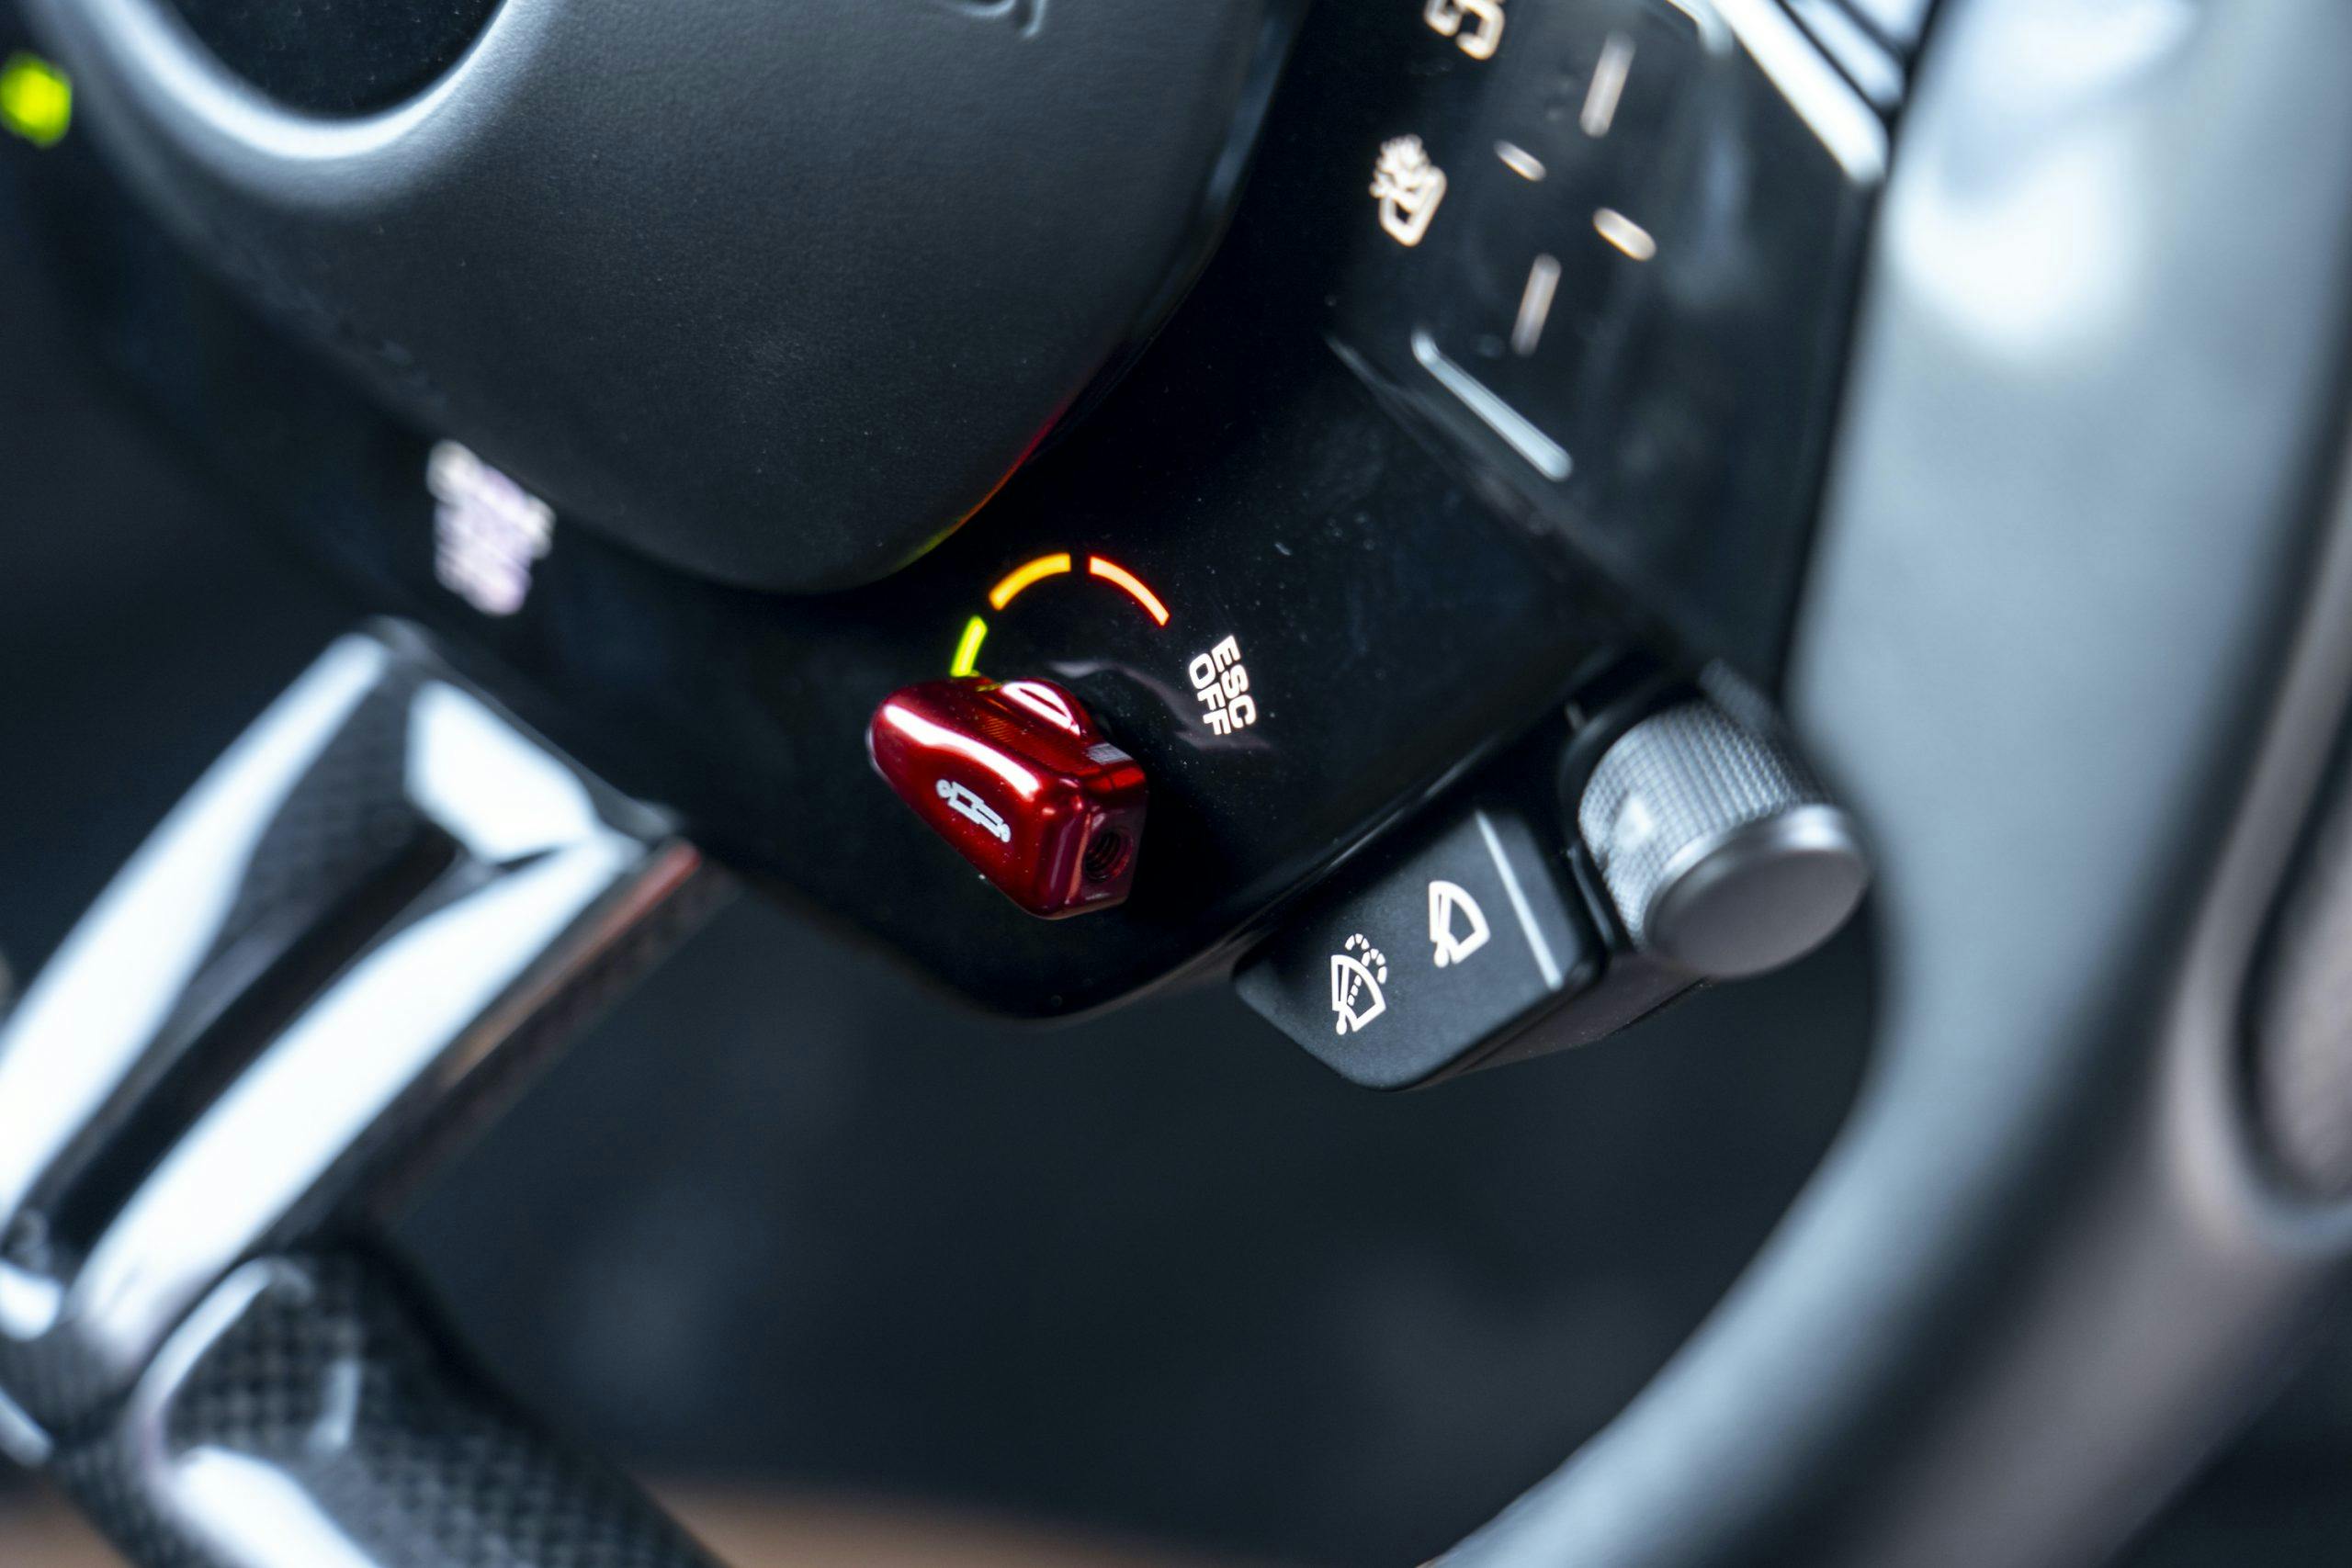 SF90 Stradale steering wheel controls